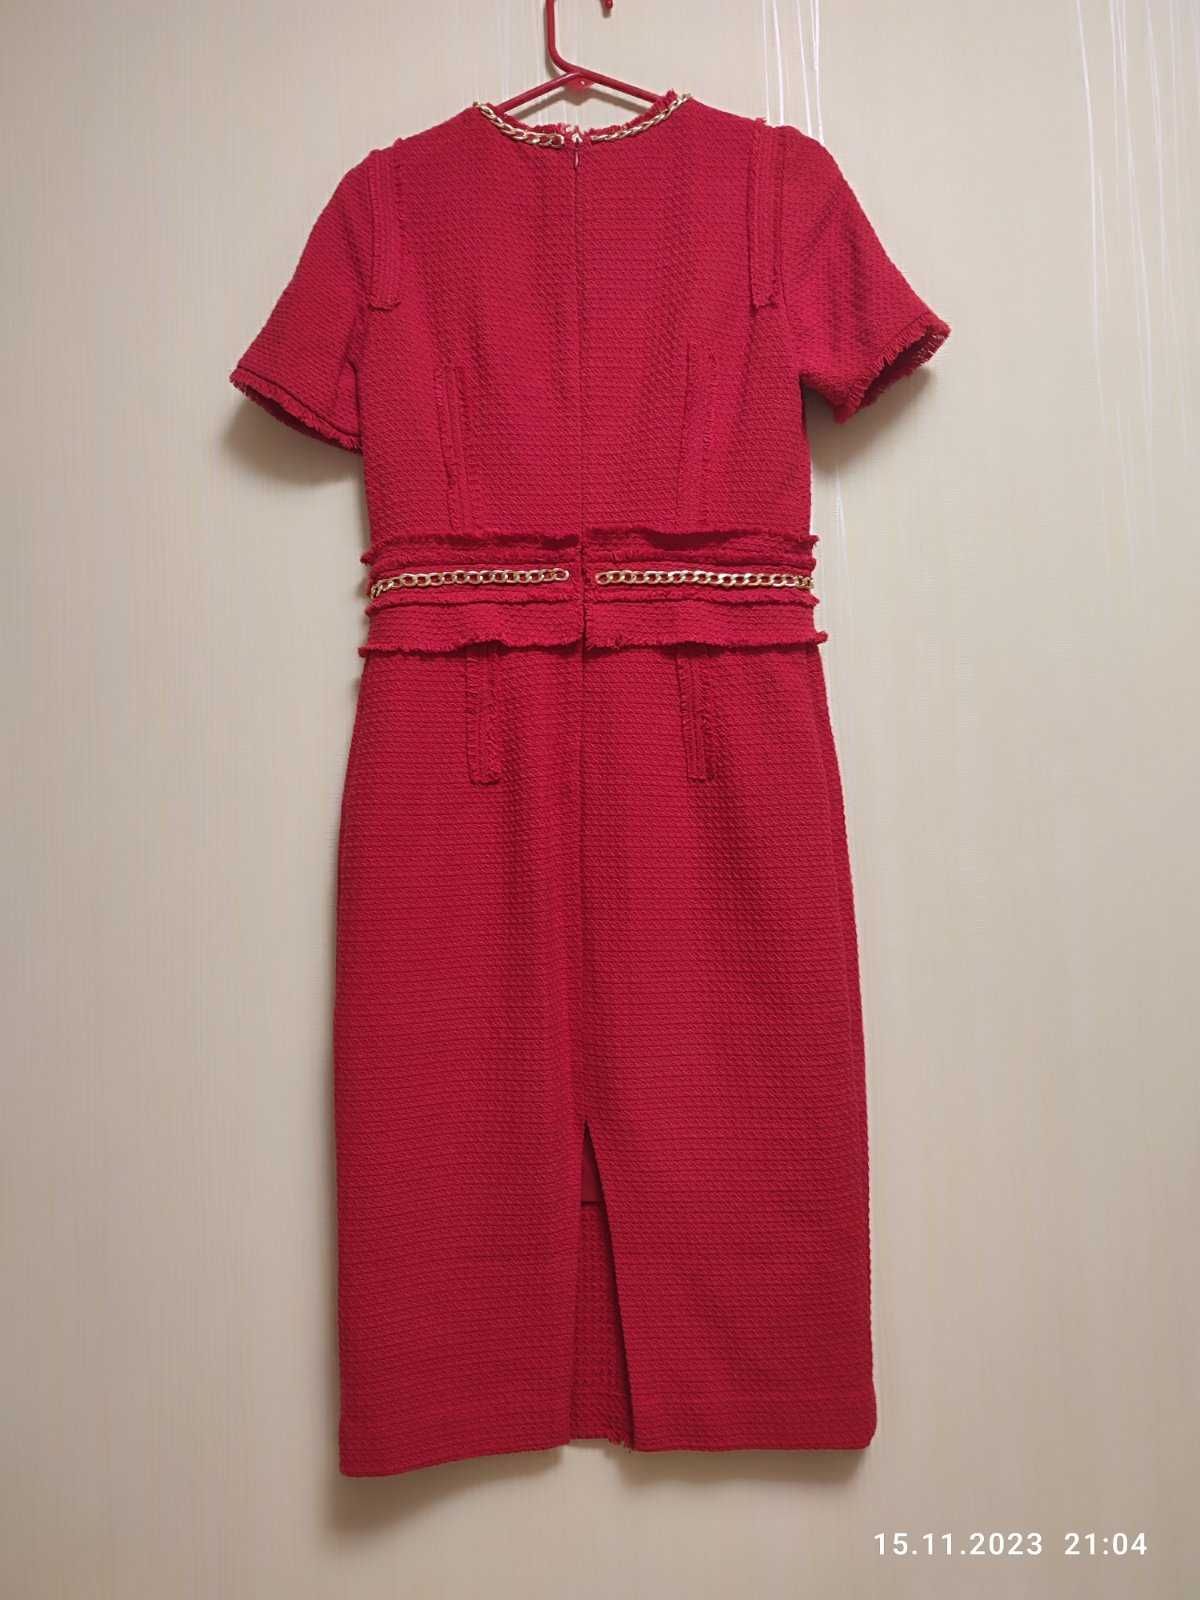 Червона сукня в стилі шанель
Lakbi